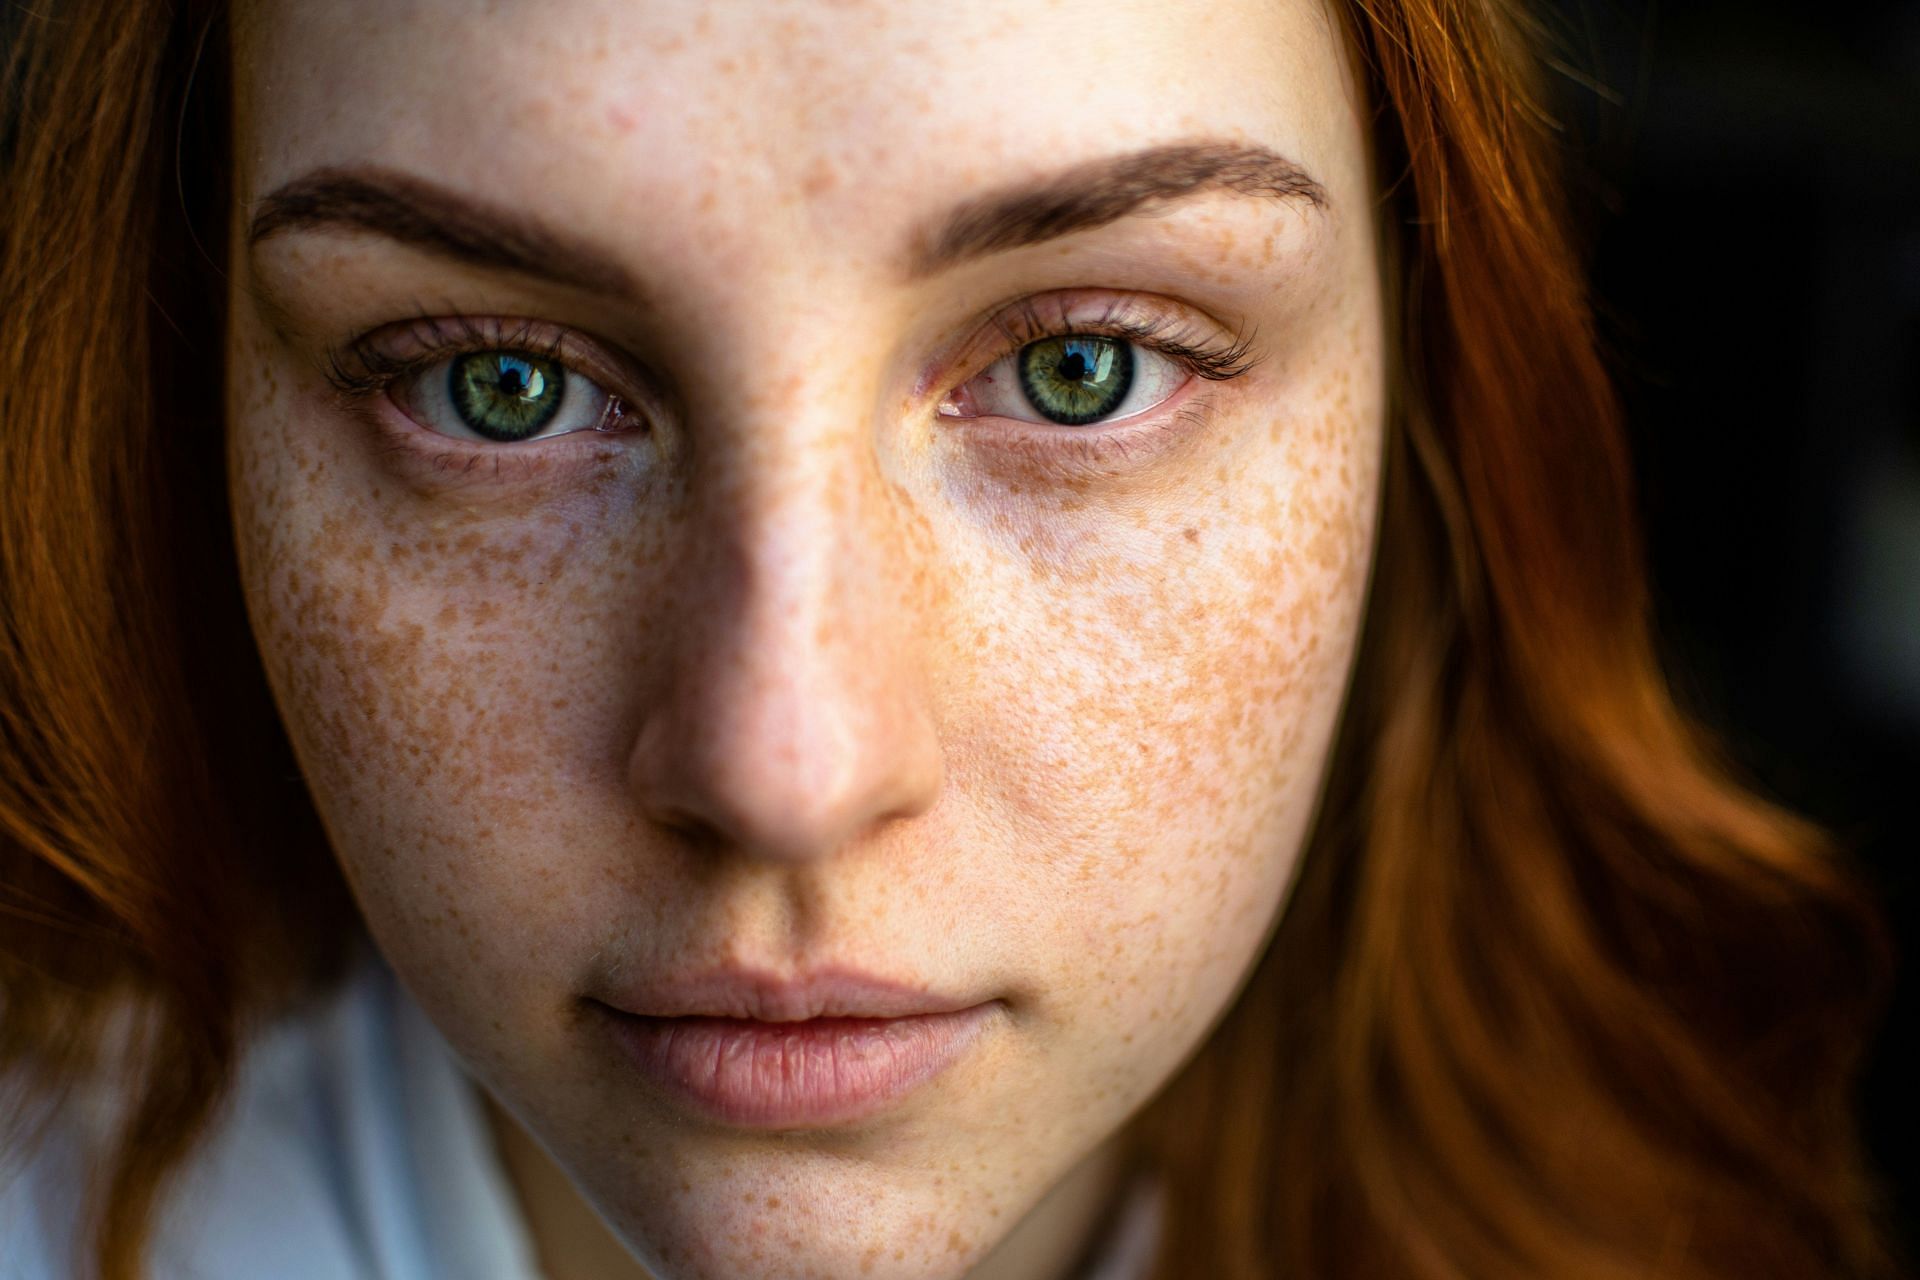 This acid helps fight acne (Image by Daniil Lebedev/Unsplash)